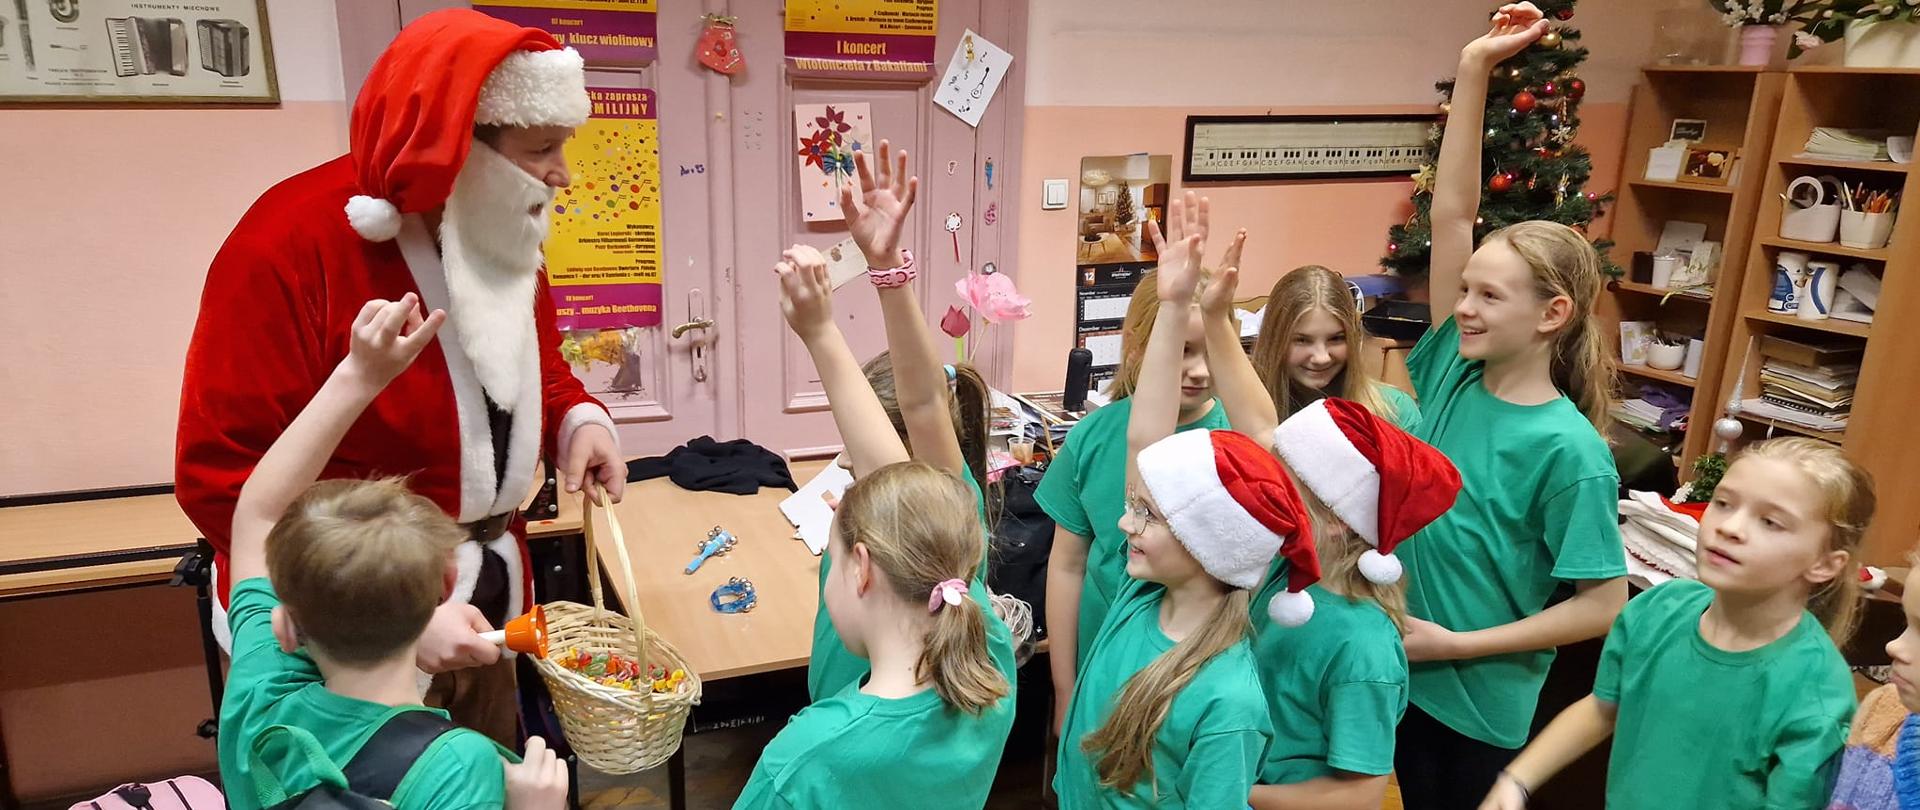 Mikołaj rozdaje słodycze dziewczynkom z zespołu rytmicznego ubranym w zielone koszulki